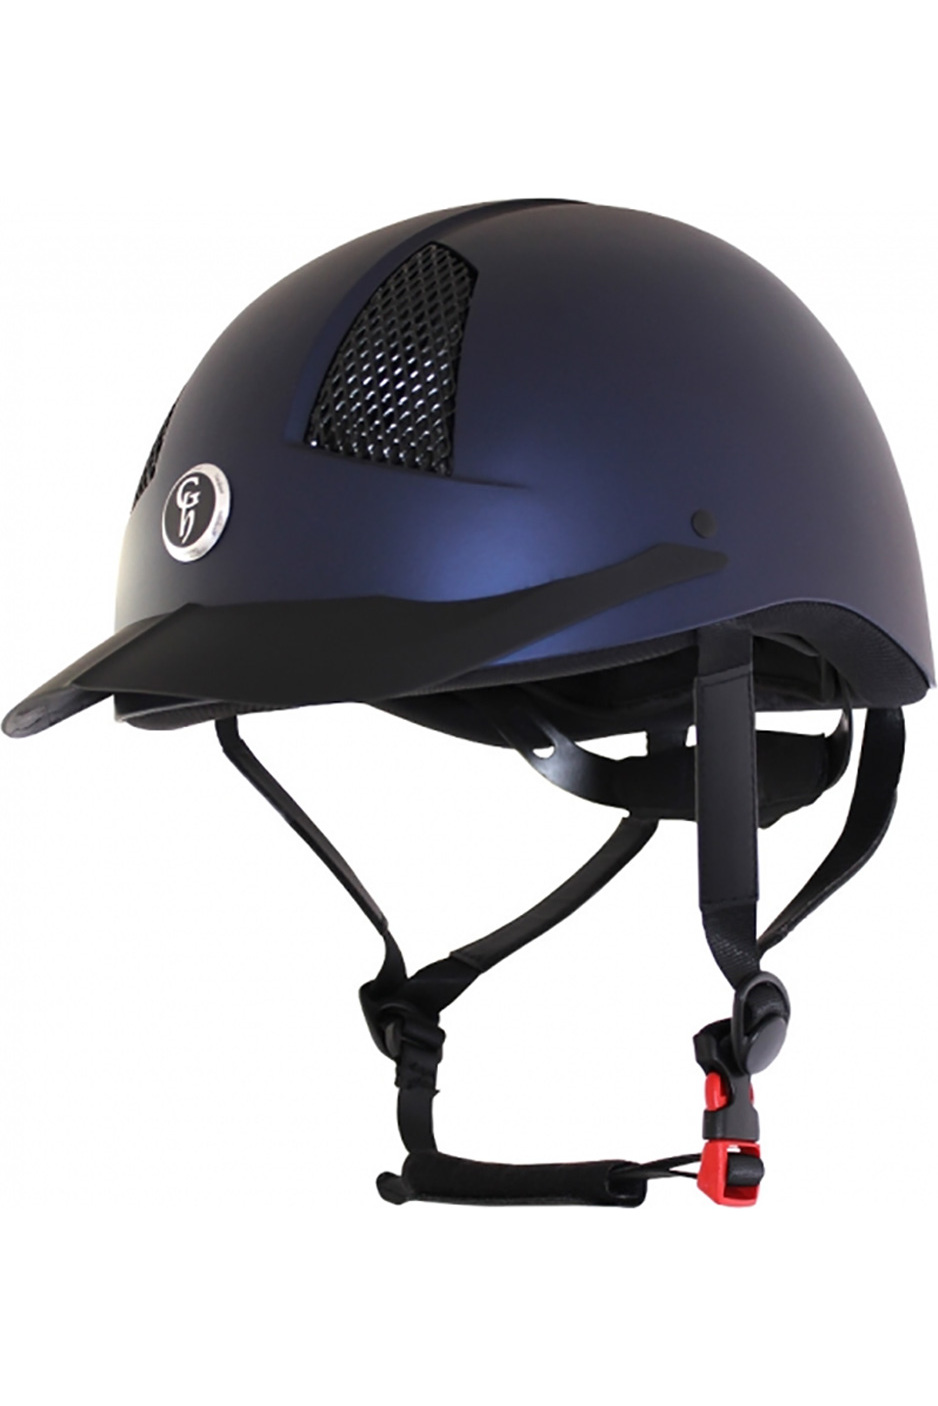 Tegne forsikring Fjernelse effektivitet Gatehouse Air Rider MK II Riding Hat - Matt Navy | The Drillshed